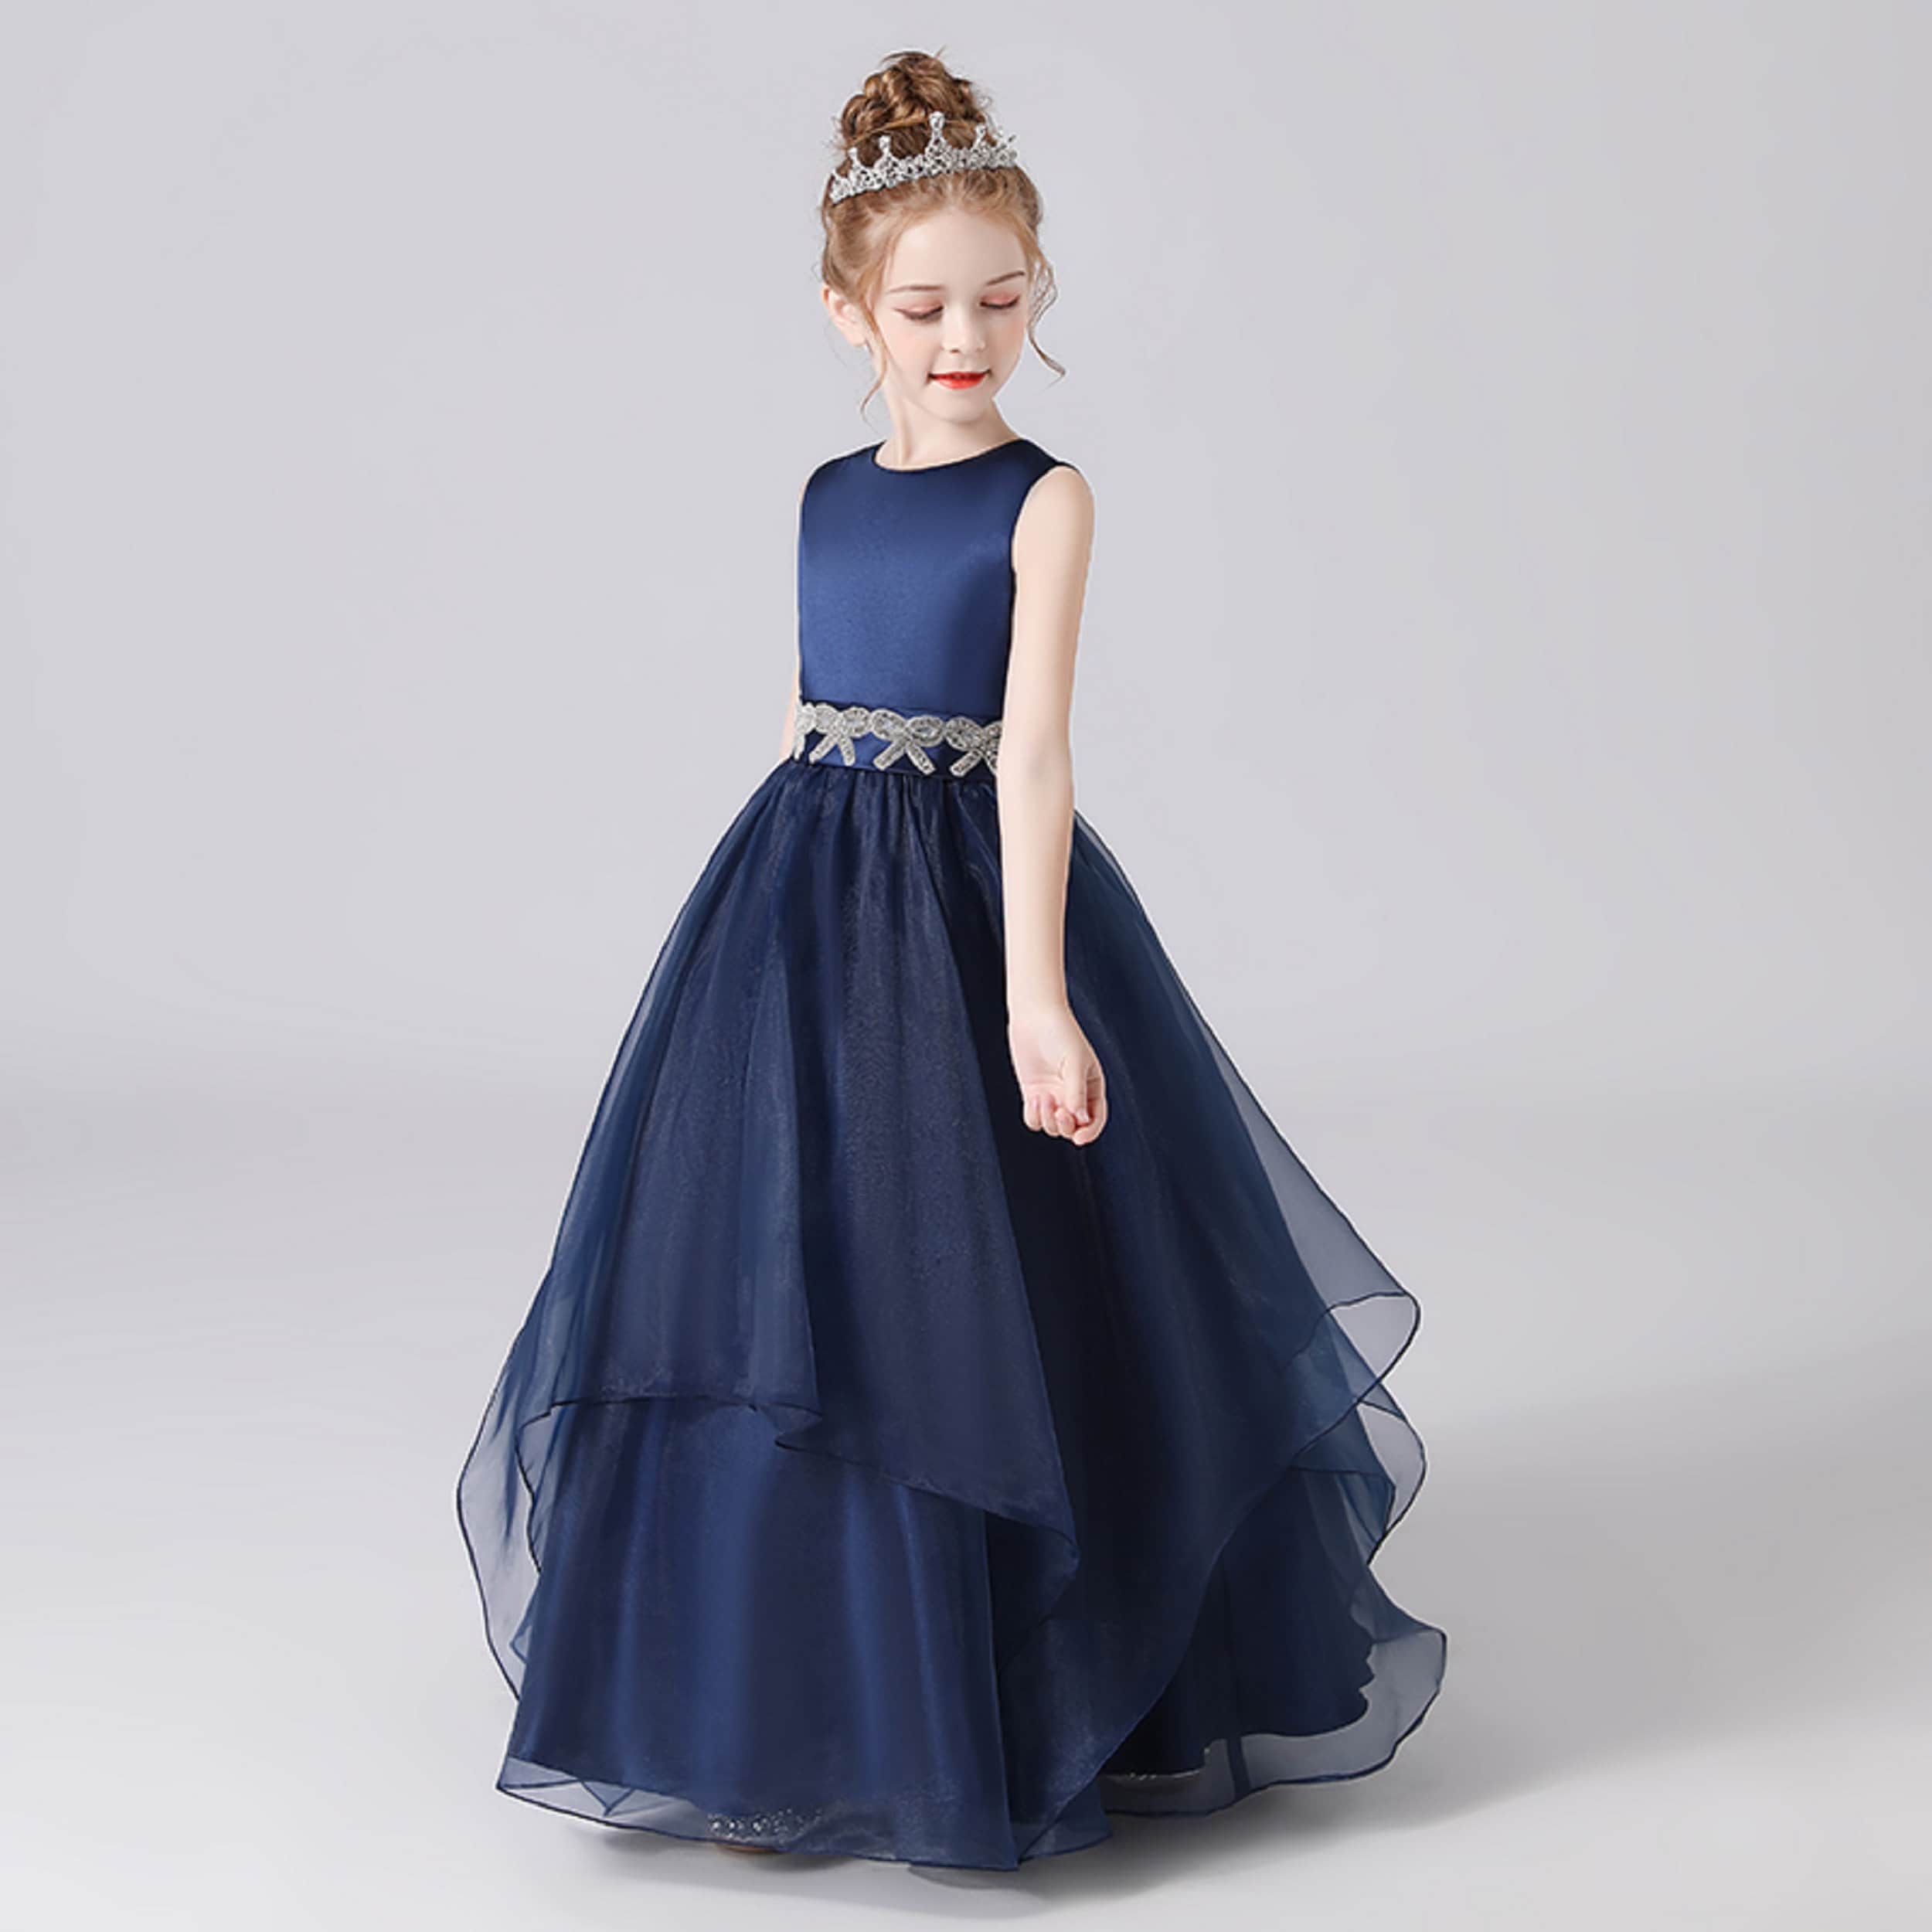 Girls Dress Navy Blue Organza Sleeveless Princess Dress for Girl ...